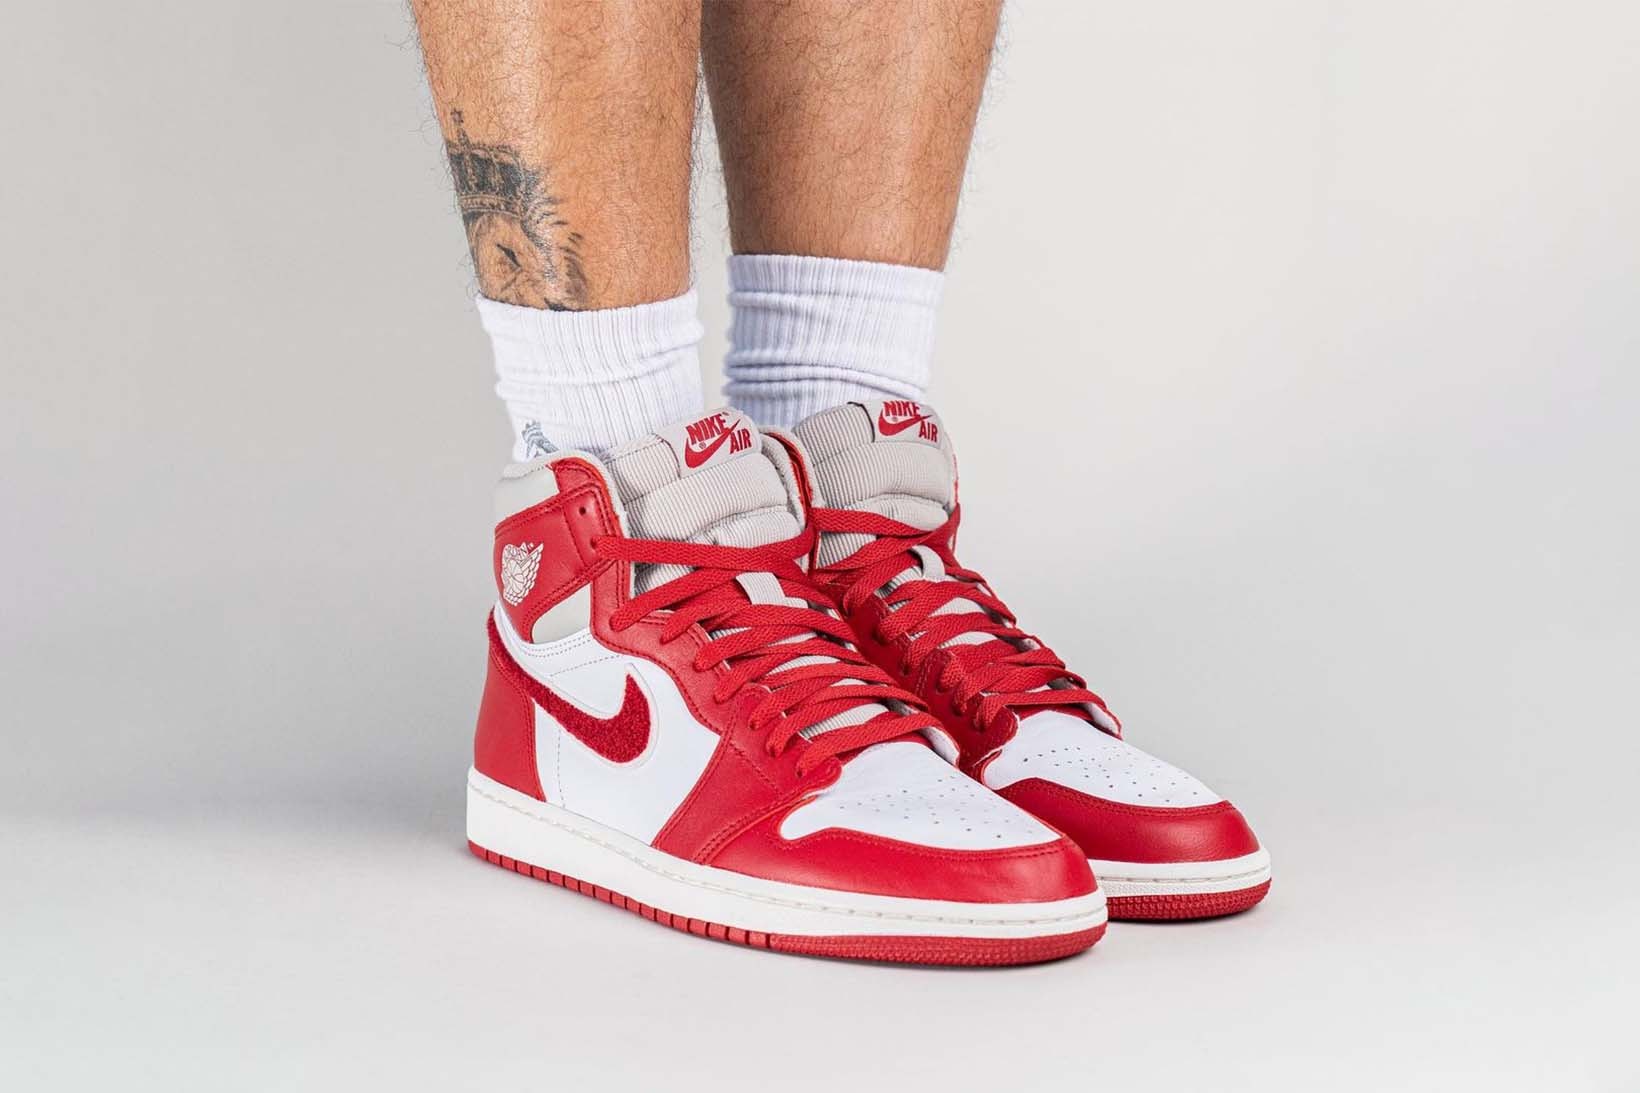 Nike Air Jordan 1 High OG Women's Chenille Varsity Red On Foot Photos Price Release Date